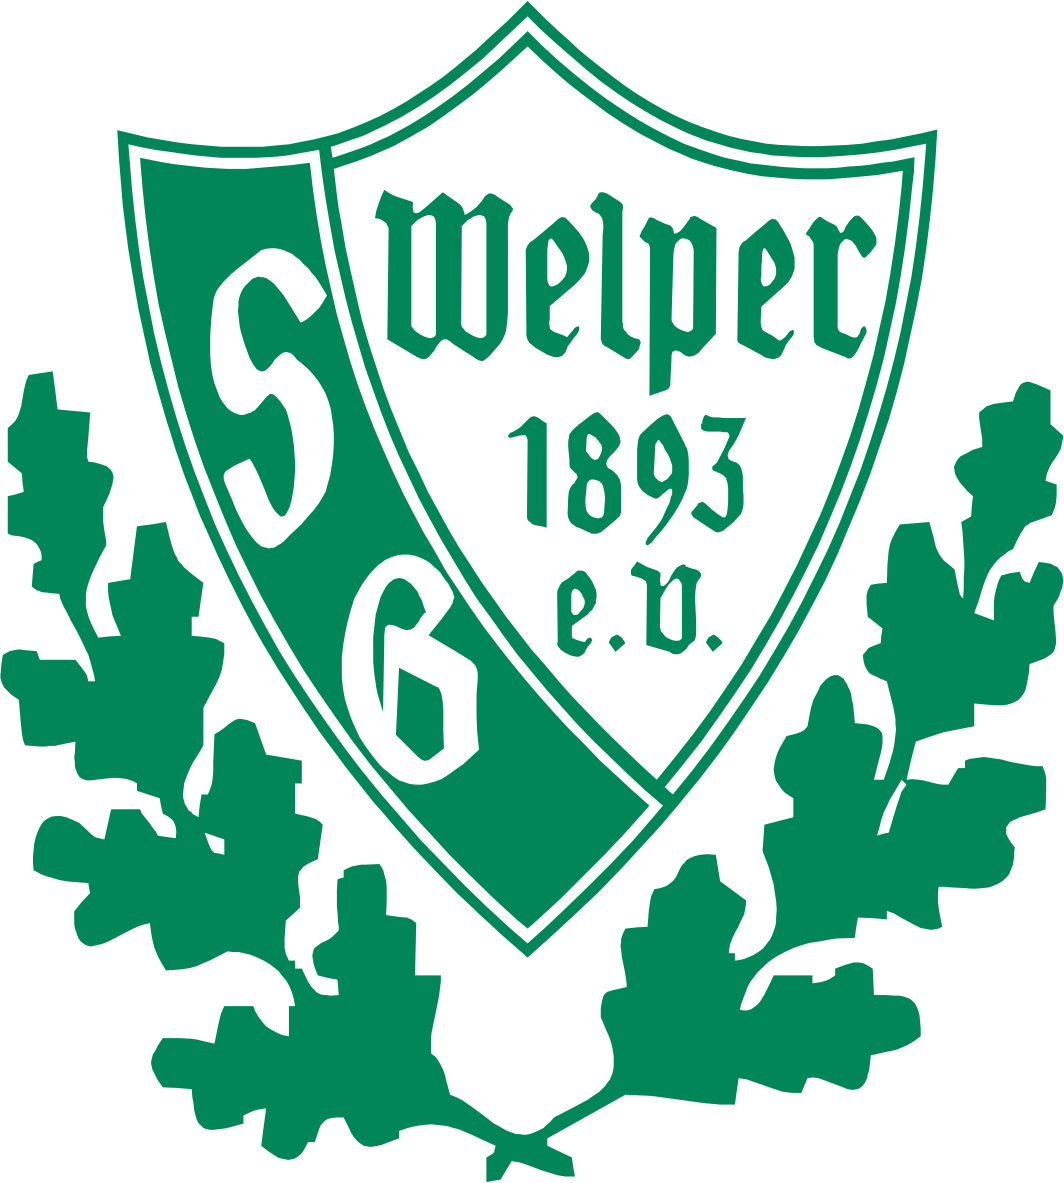 SG Welper